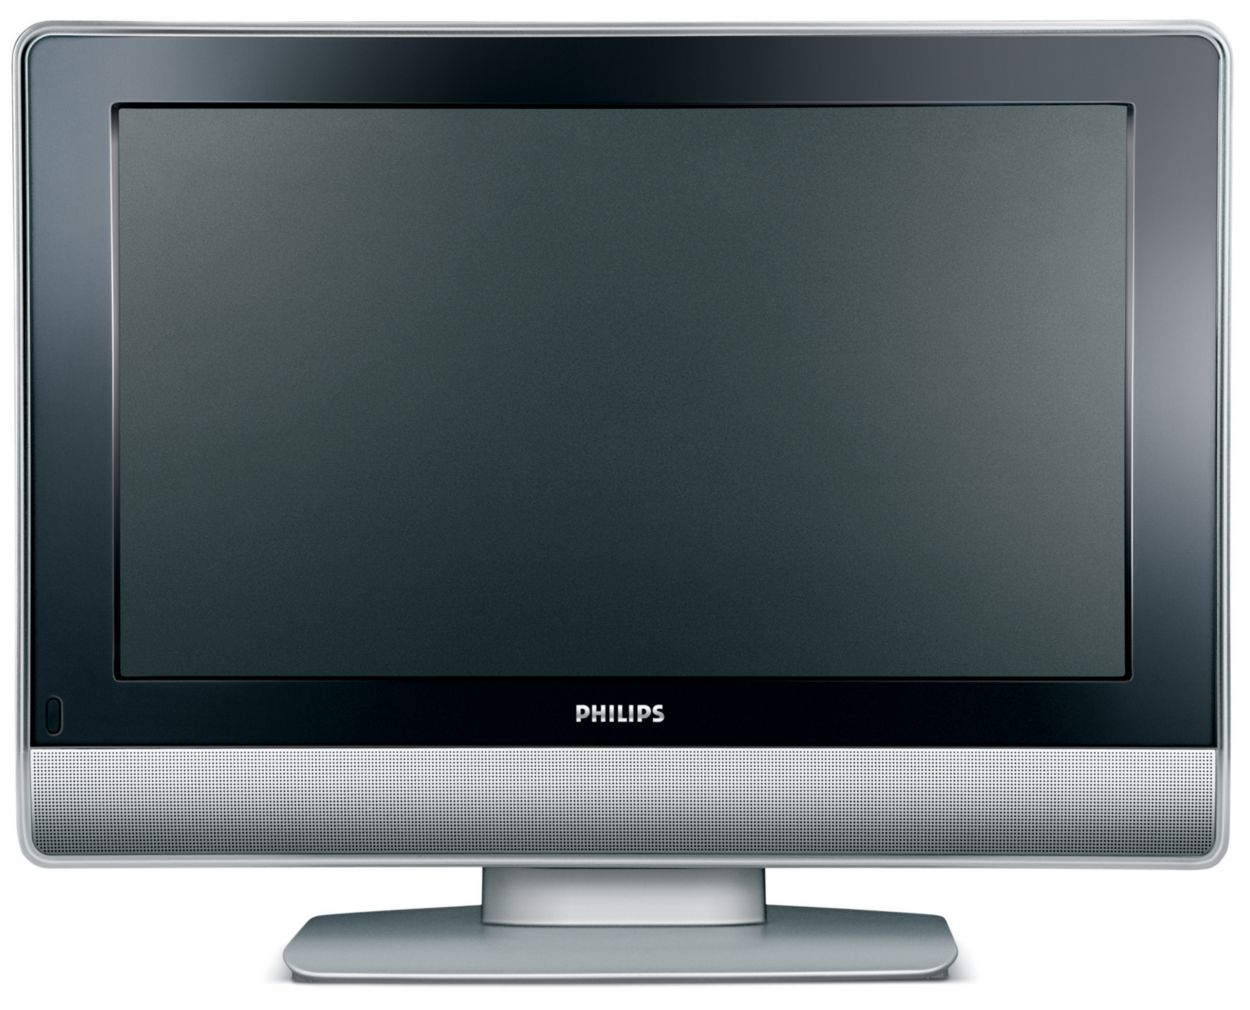 Старые жк телевизоры. Philips 26pf7321. Телевизор Philips 26pf7521d. Телевизор Philips 50pf7321. Телевизор 26 дюйма Филипс.